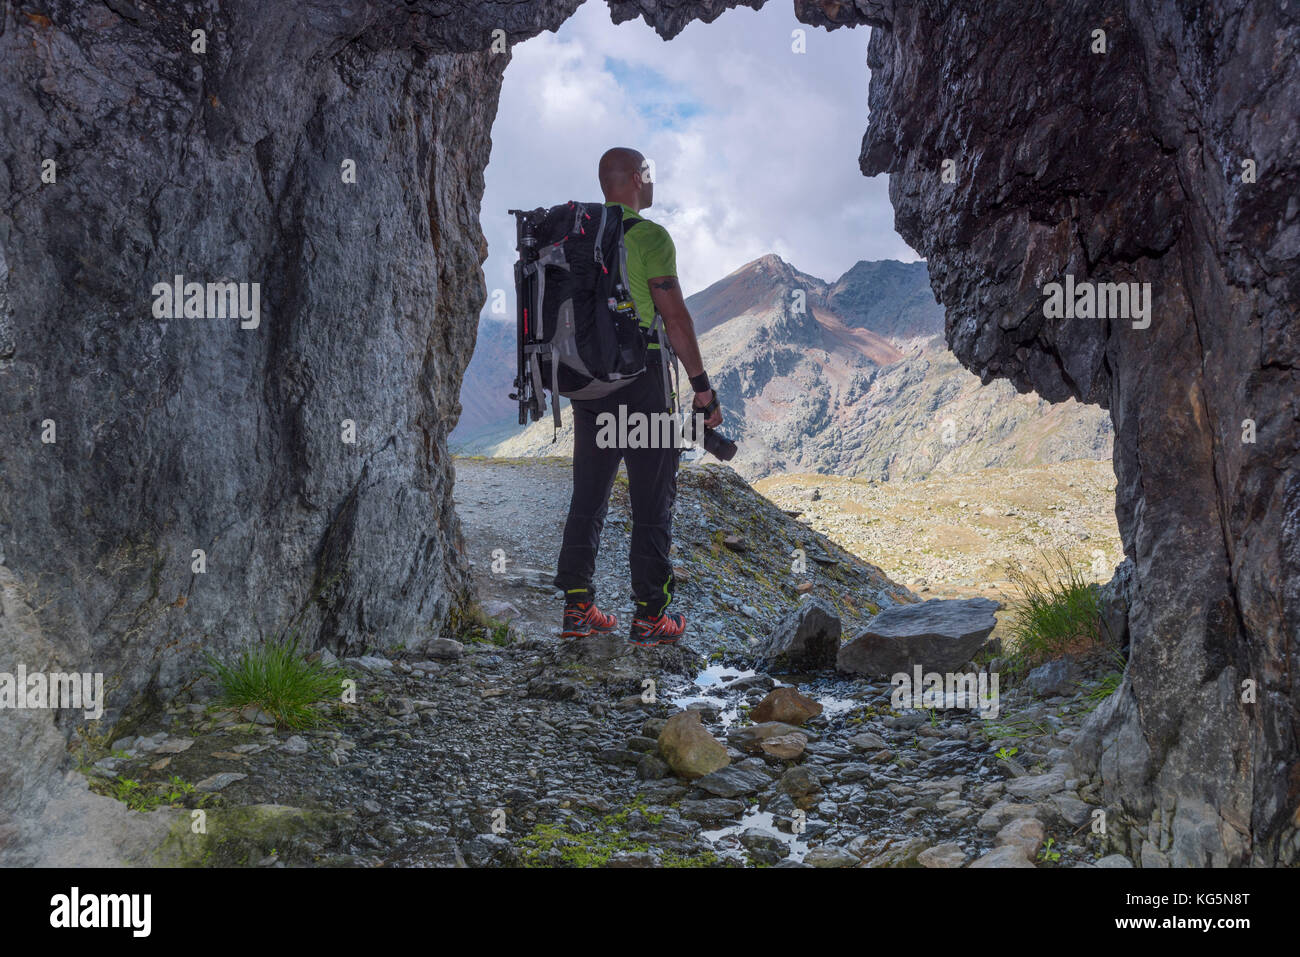 Photographe qui balaie l'horizon de l'Europe, Italie, région du Trentin, Sun Valley, pejo, Stelvio National Park Banque D'Images